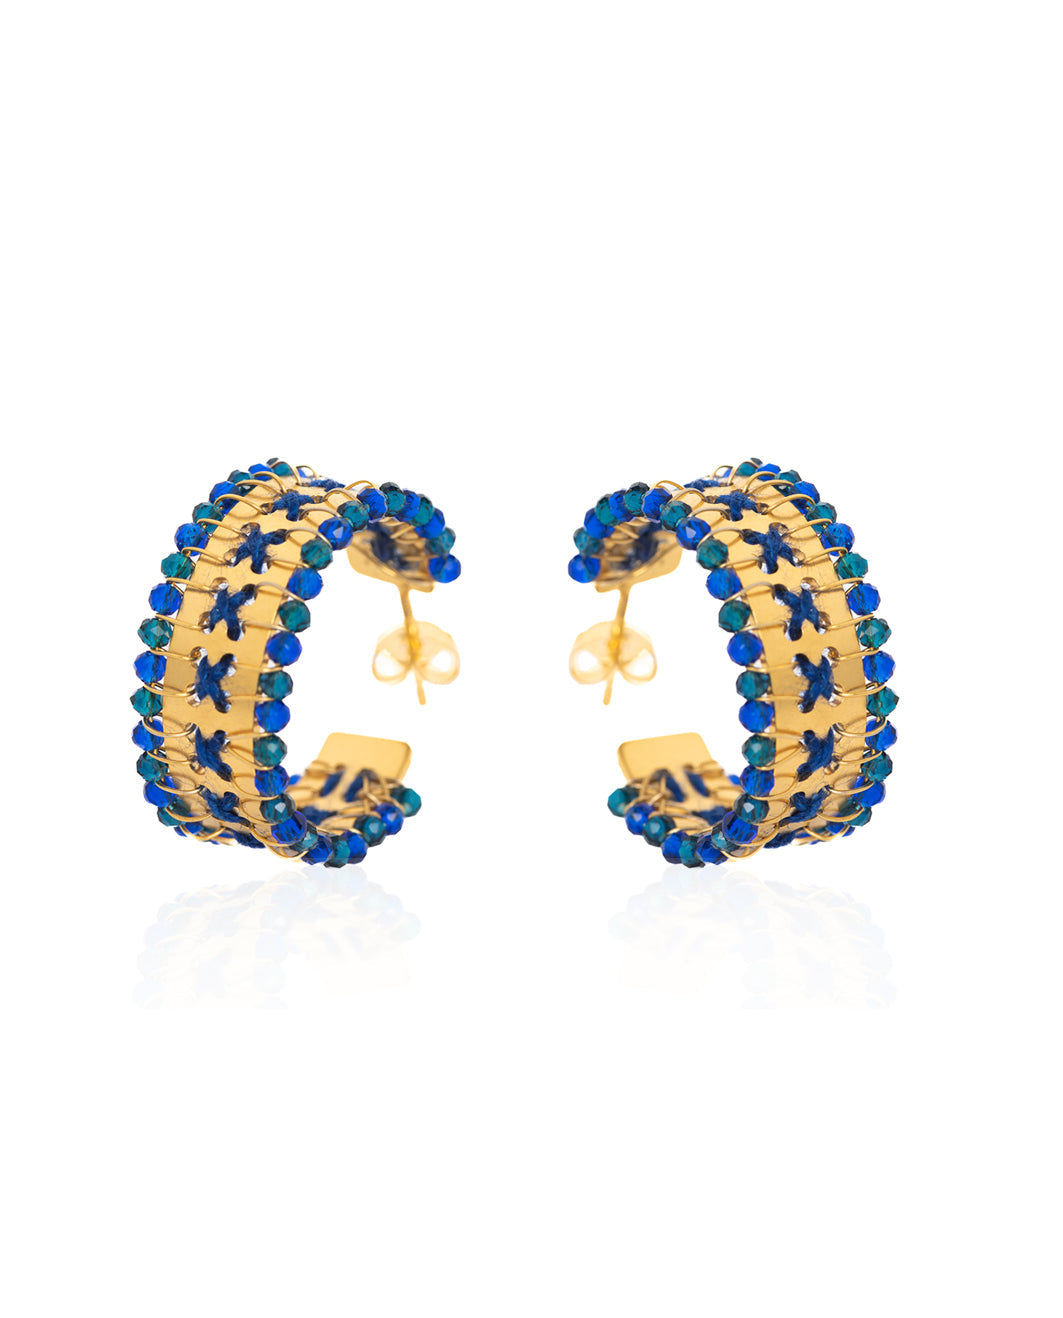 Kedima Mosaico earrings